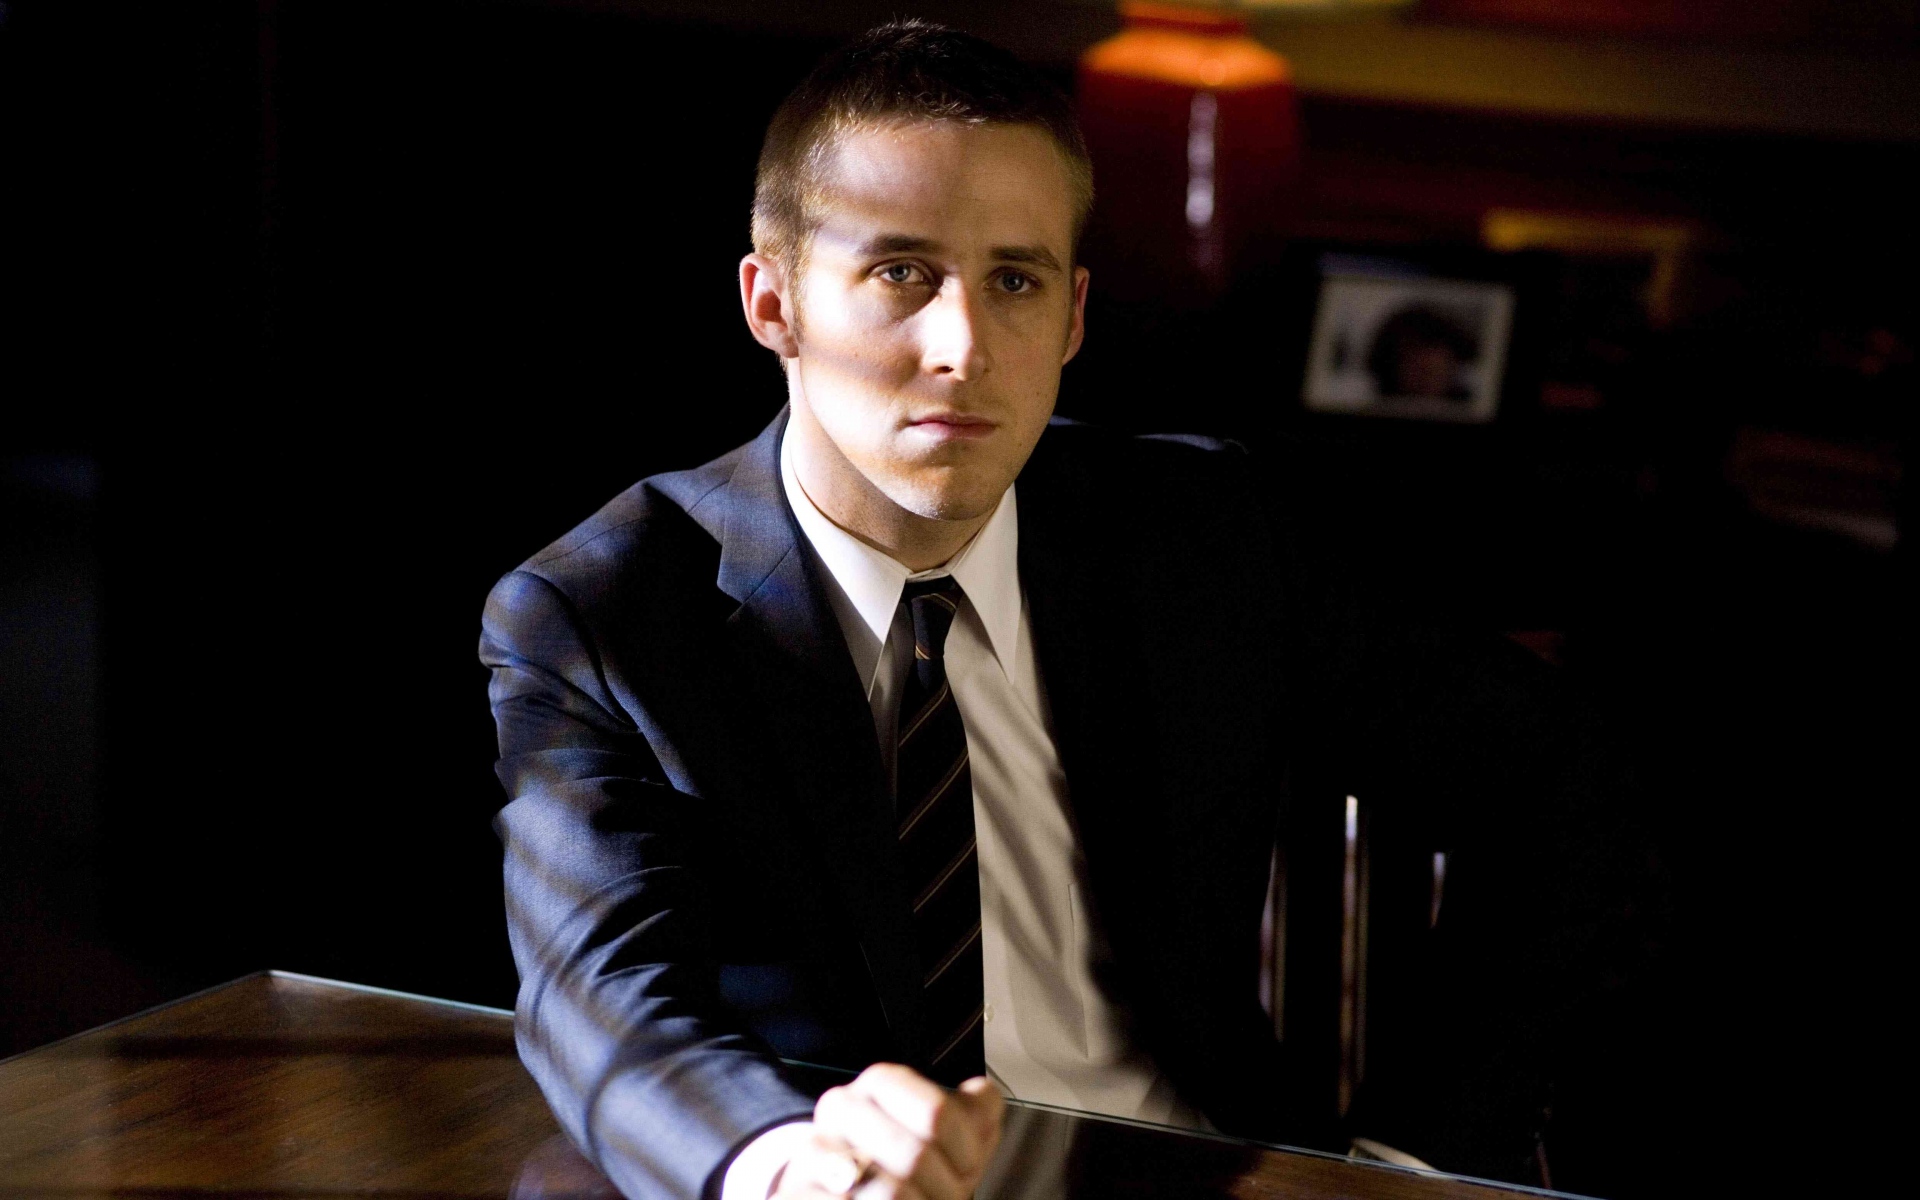 Картинки Ryan gosling, актер, мужчина, щетина, костюм, задумчивый, стол фото и обои на рабочий стол